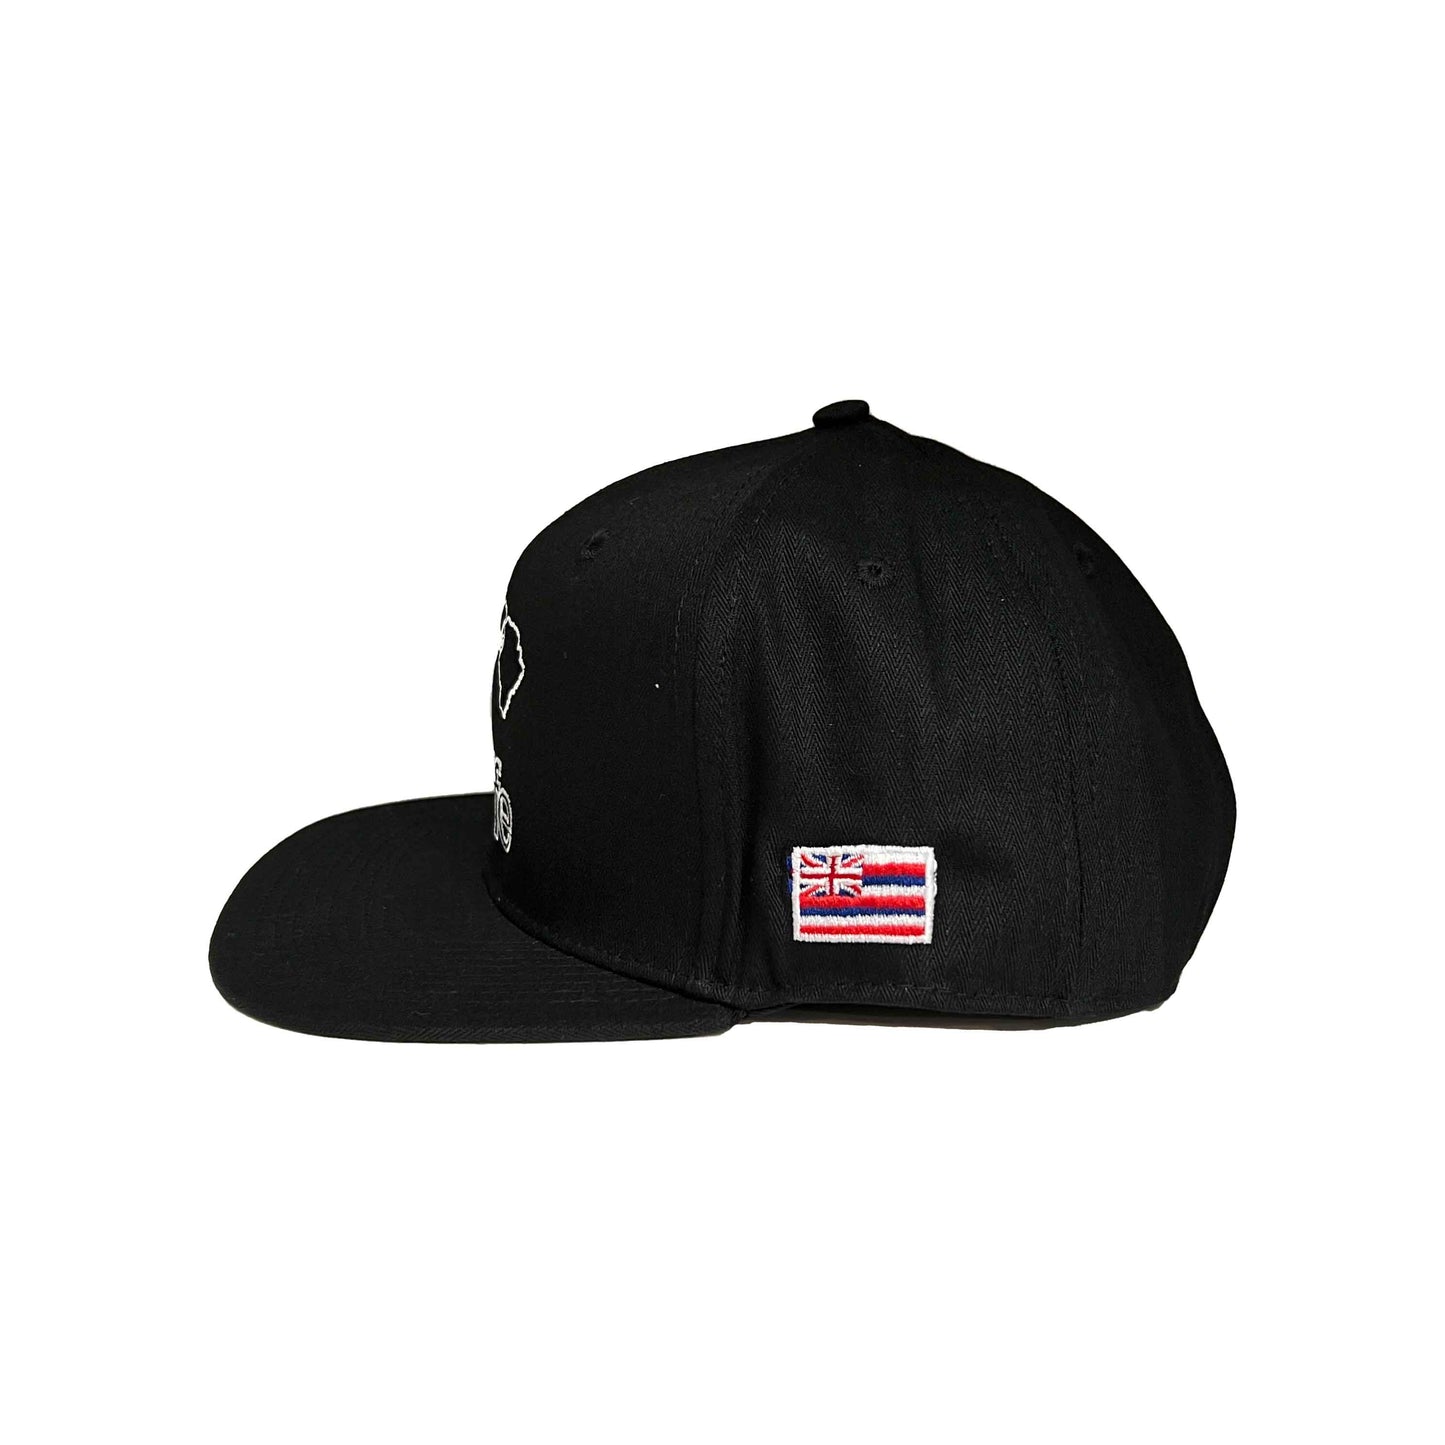 BASIC LOGO Snapback hats Black/White